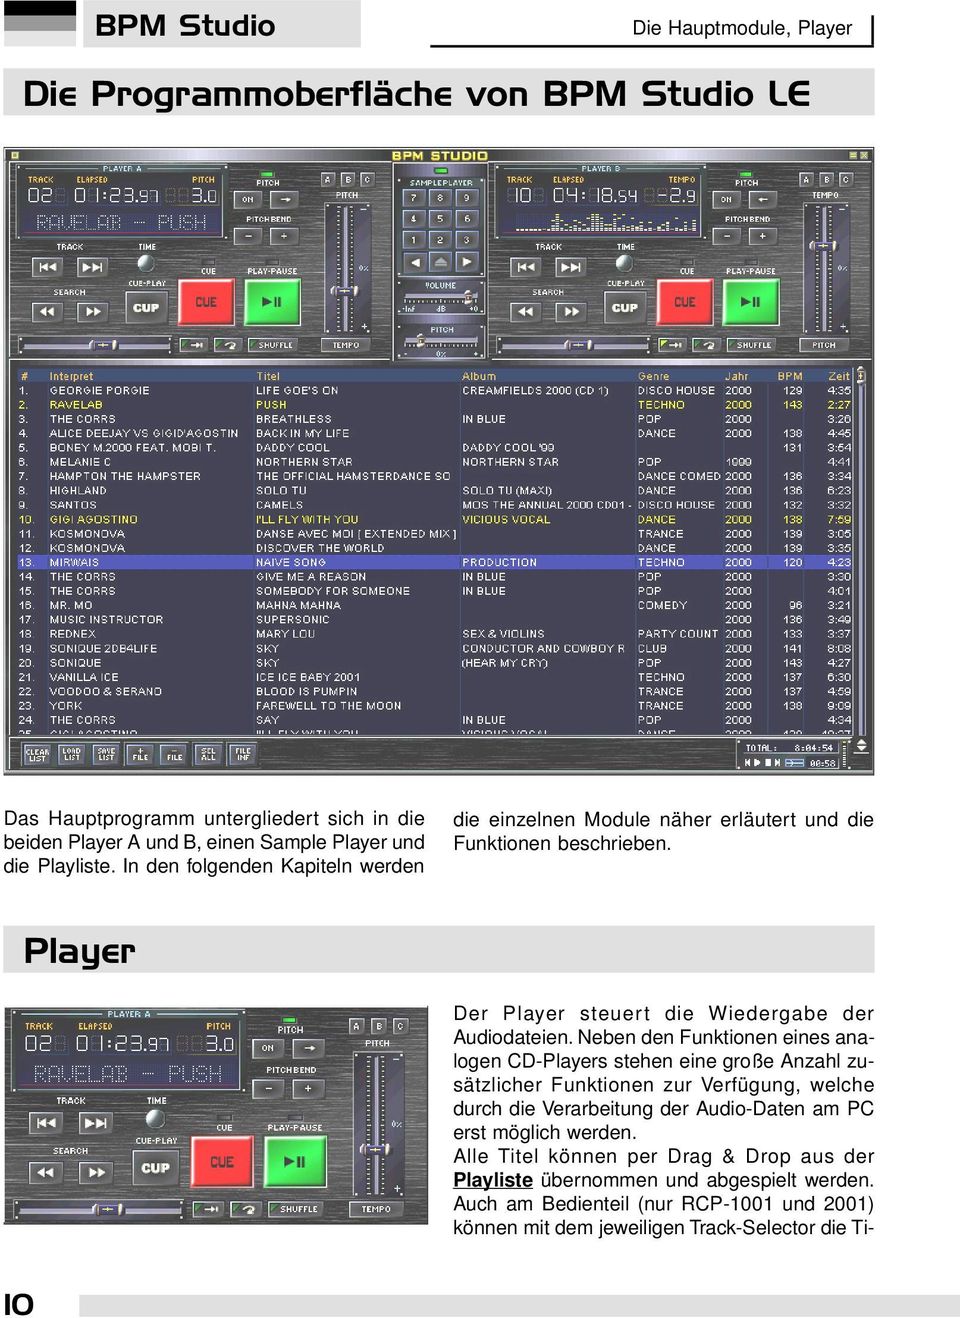 Neben den Funktionen eines analogen CD-Players stehen eine große Anzahl zusätzlicher Funktionen zur Verfügung, welche durch die Verarbeitung der Audio-Daten am PC erst möglich